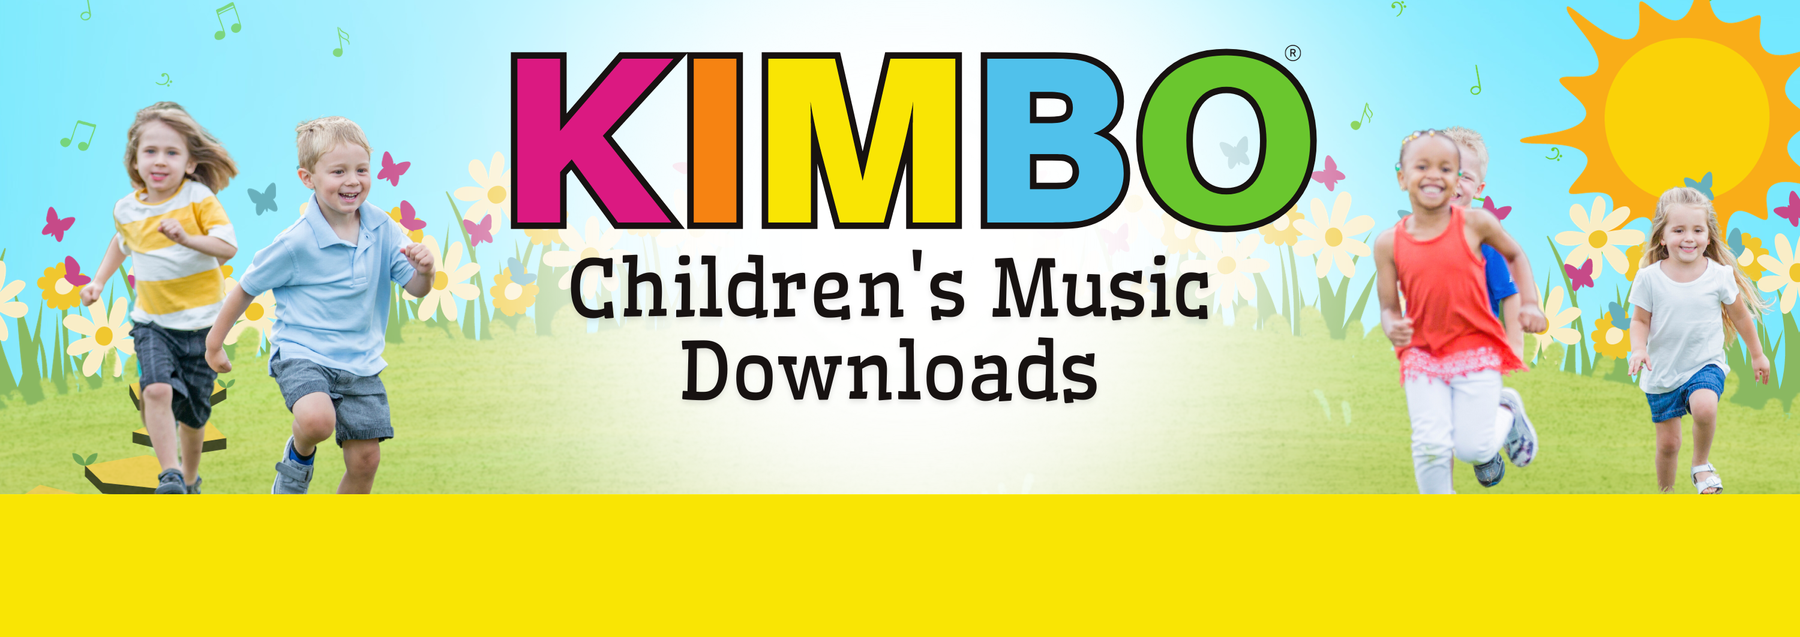 Kimbo Children's Music